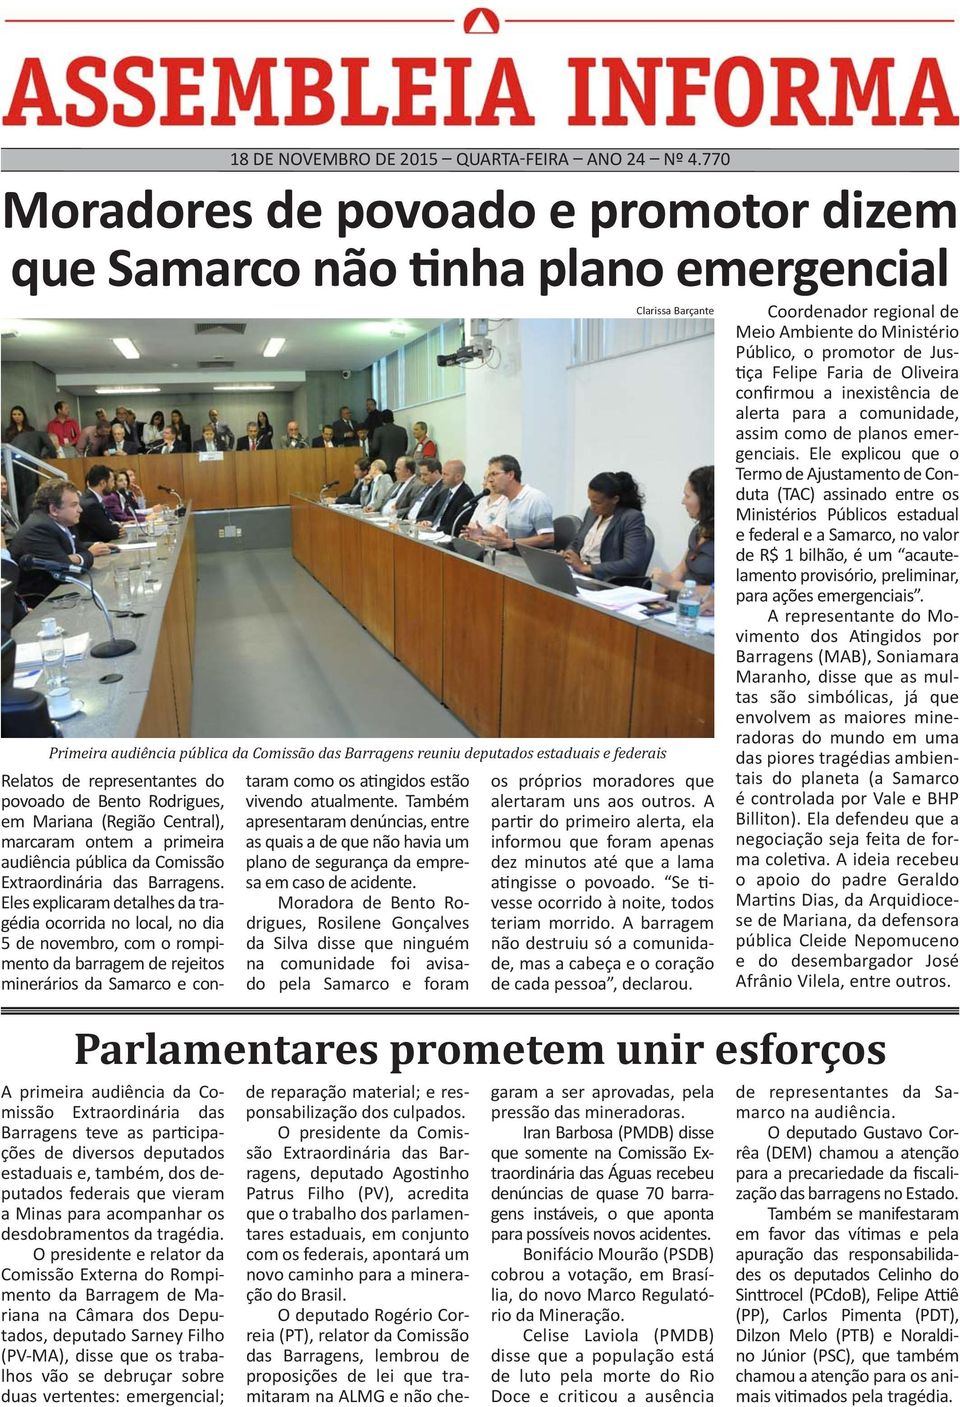 do povoado de Bento Rodrigues, em Mariana (Região Central), marcaram ontem a primeira audiência pública da Comissão Extraordinária das Barragens.